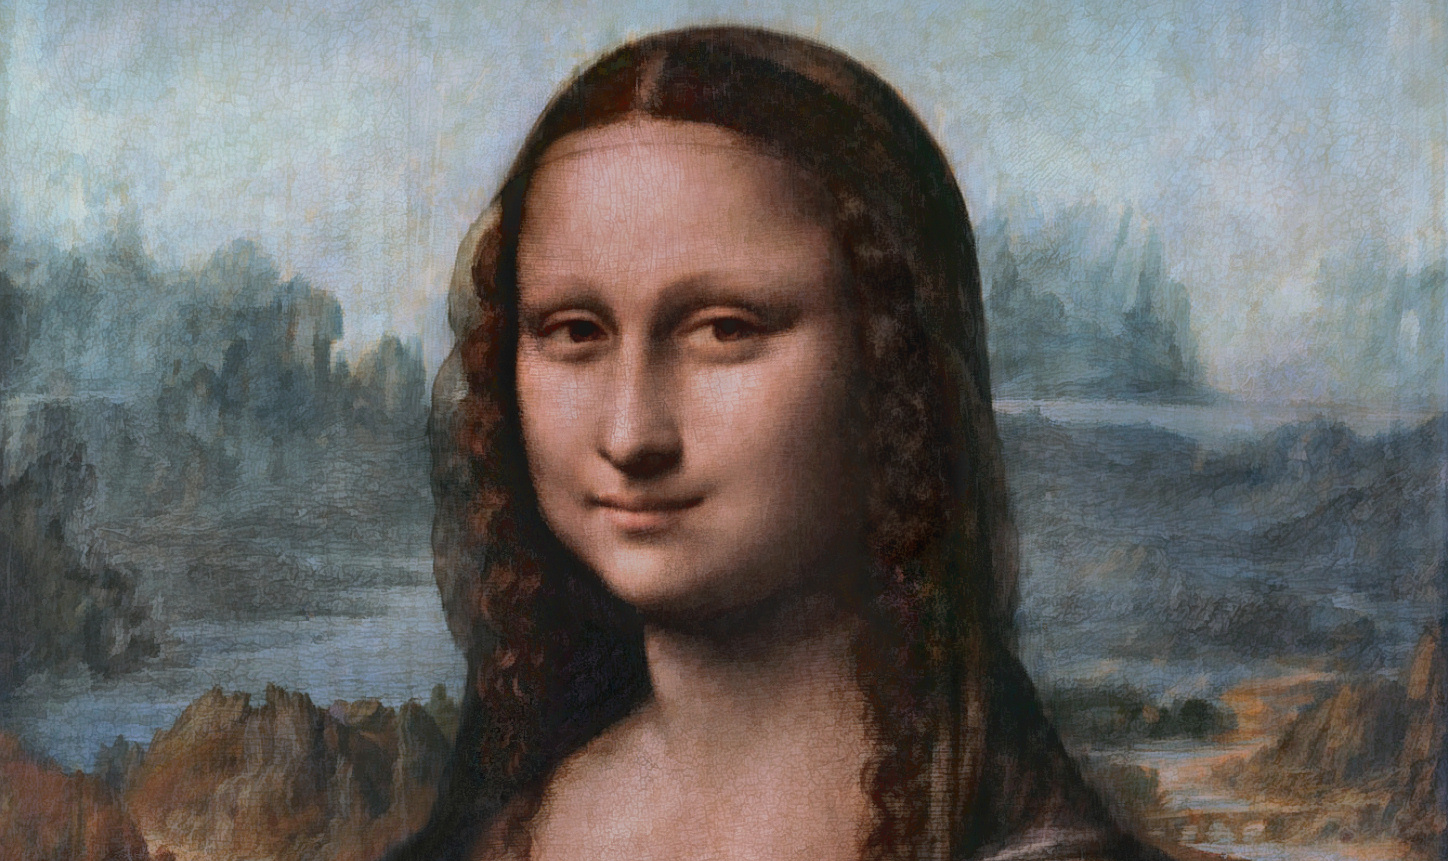 Obra-prima do pintor italiano ficava em lugar discreto do museu francês e só era apreciada por entendidos de arte